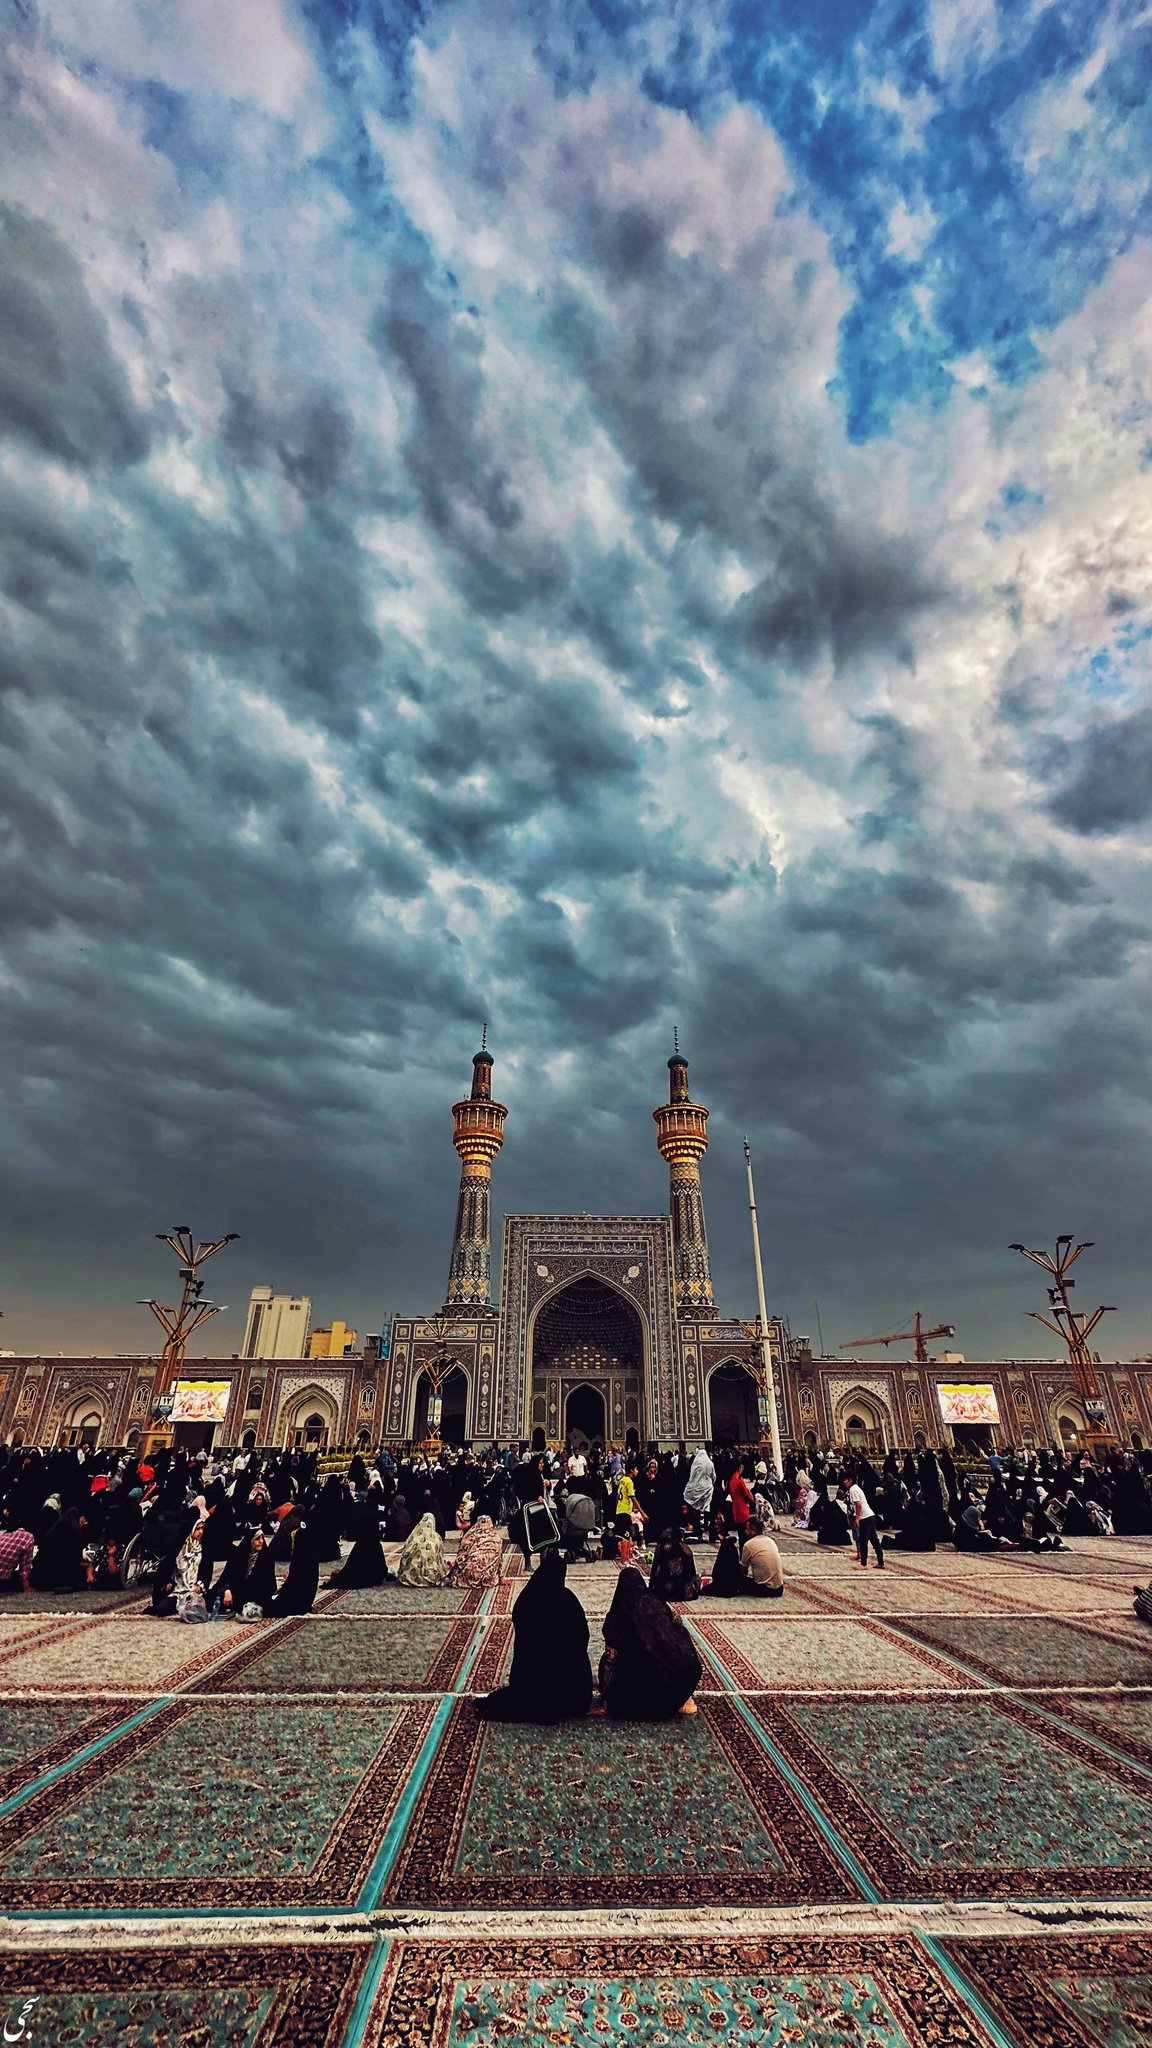 تصویر خاص از آسمان و صحن حرم امام رضا (ع)+عکس